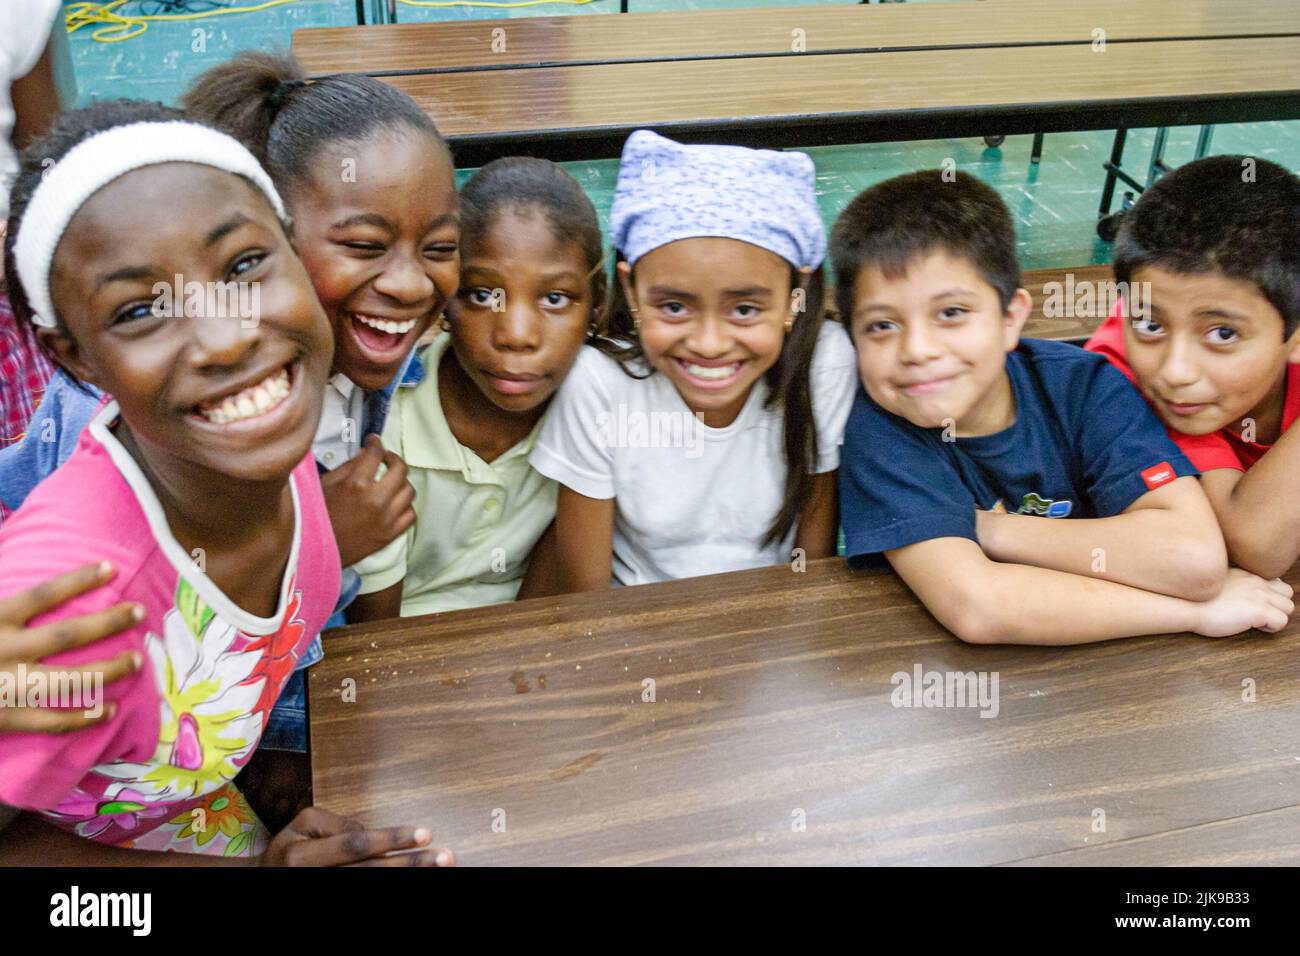 Miami Florida,Frederick Douglass Elementary School primaria,bassa povertà di reddito gli studenti ispanici neri ragazze ragazzi bambini caffetteria tavoli da pranzo Foto Stock